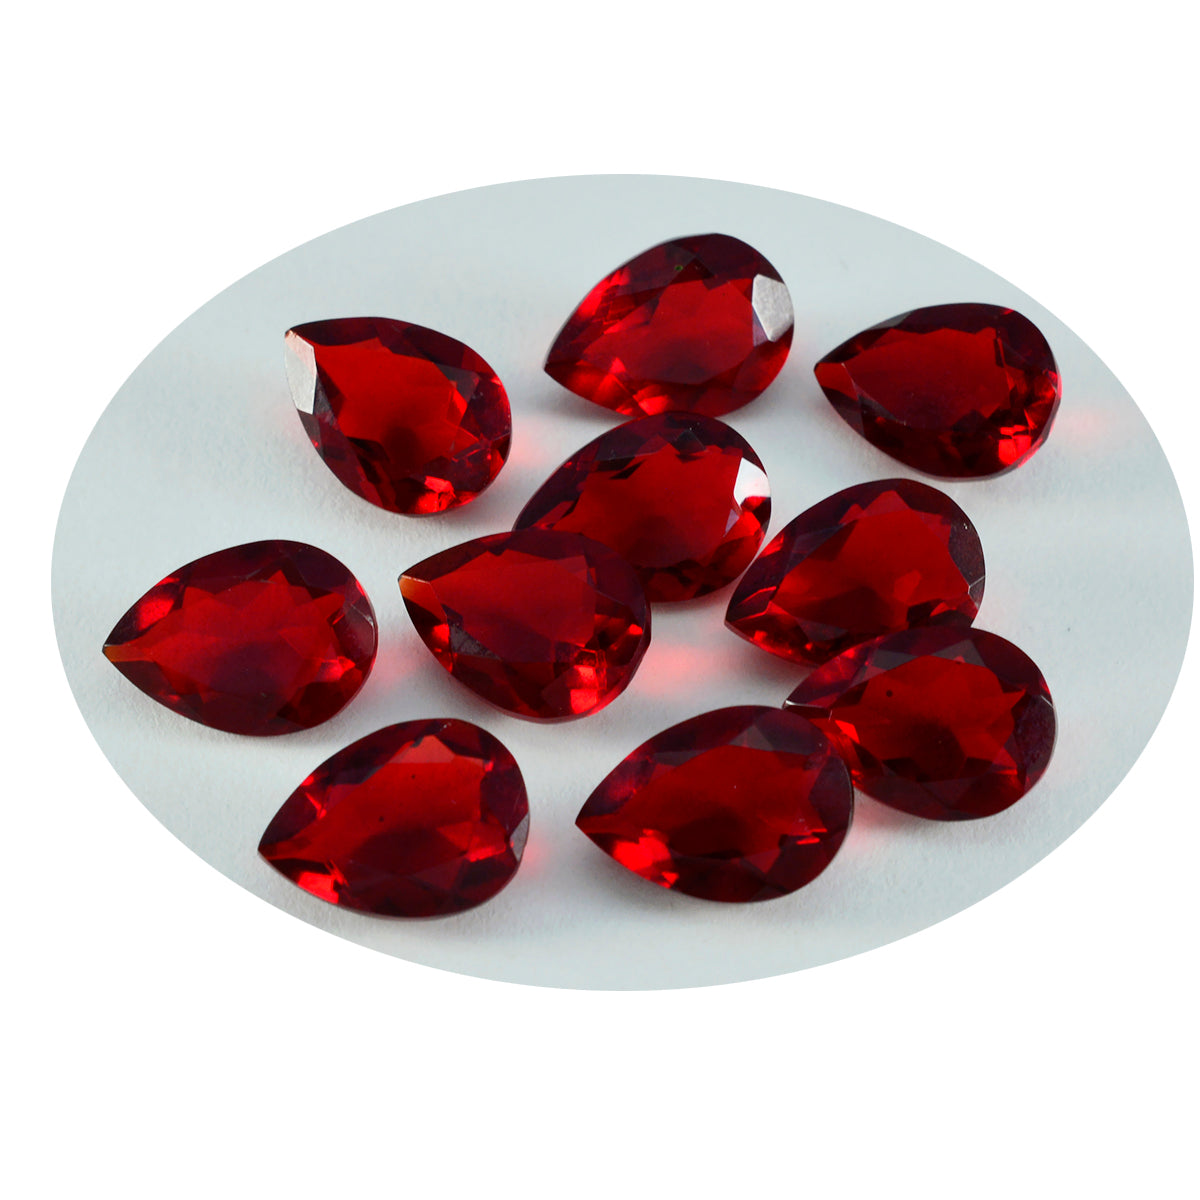 riyogems 1 шт. красный рубин cz граненый 6x9 мм грушевидной формы красивый качественный драгоценный камень